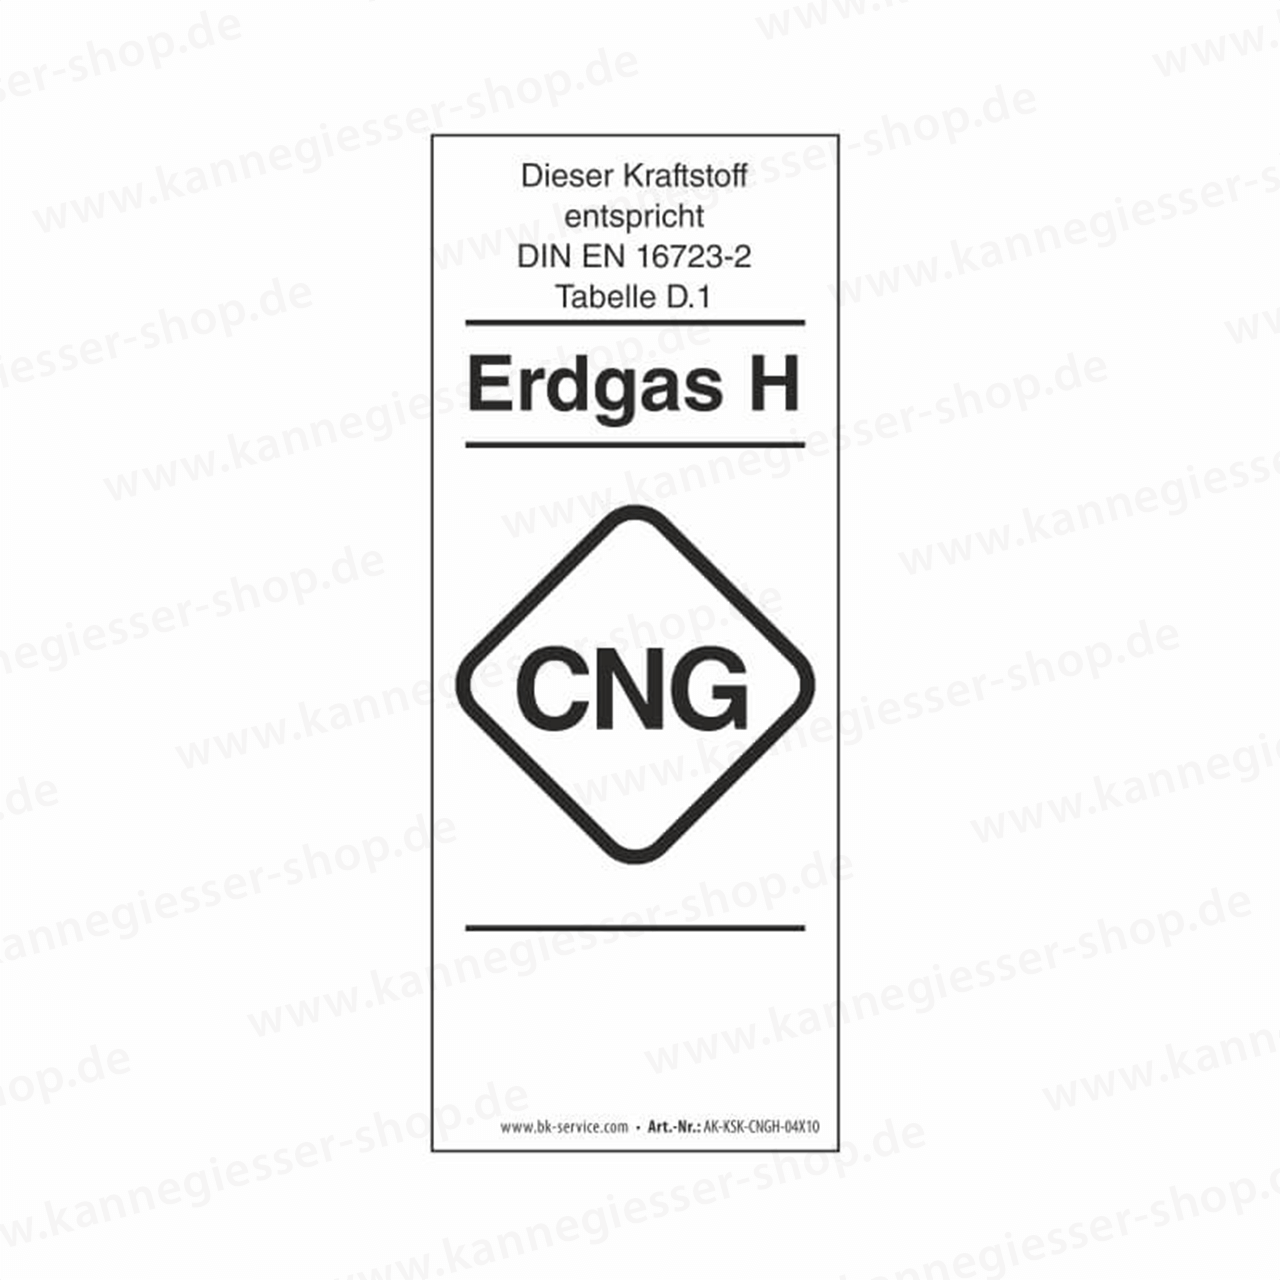 Aufkleber - Kraftstoffkennzeichnung CNG Erdgas Gruppe H (DIN EN 16723-2)